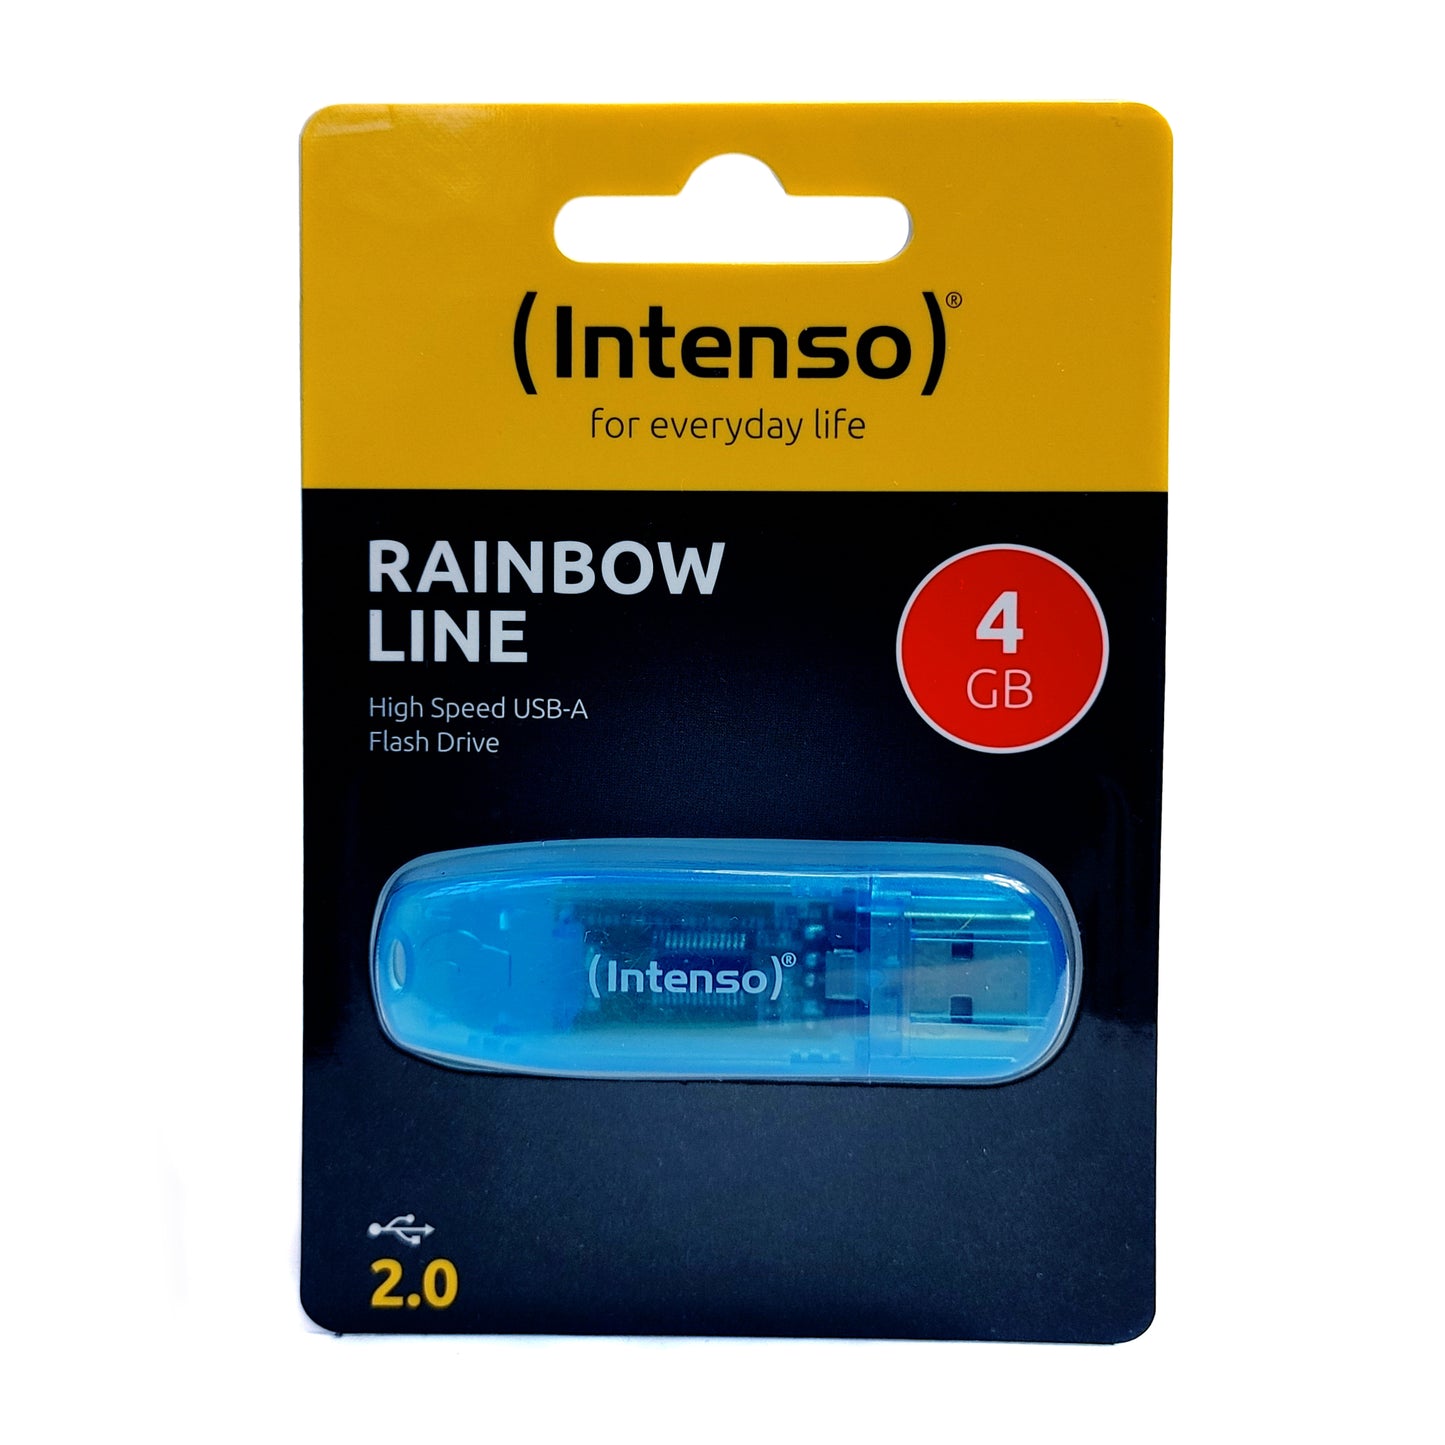 USB Stick 4GB Intenso Rainbow Line Blau USB-A 2.0 Flash Drive Speicherstick